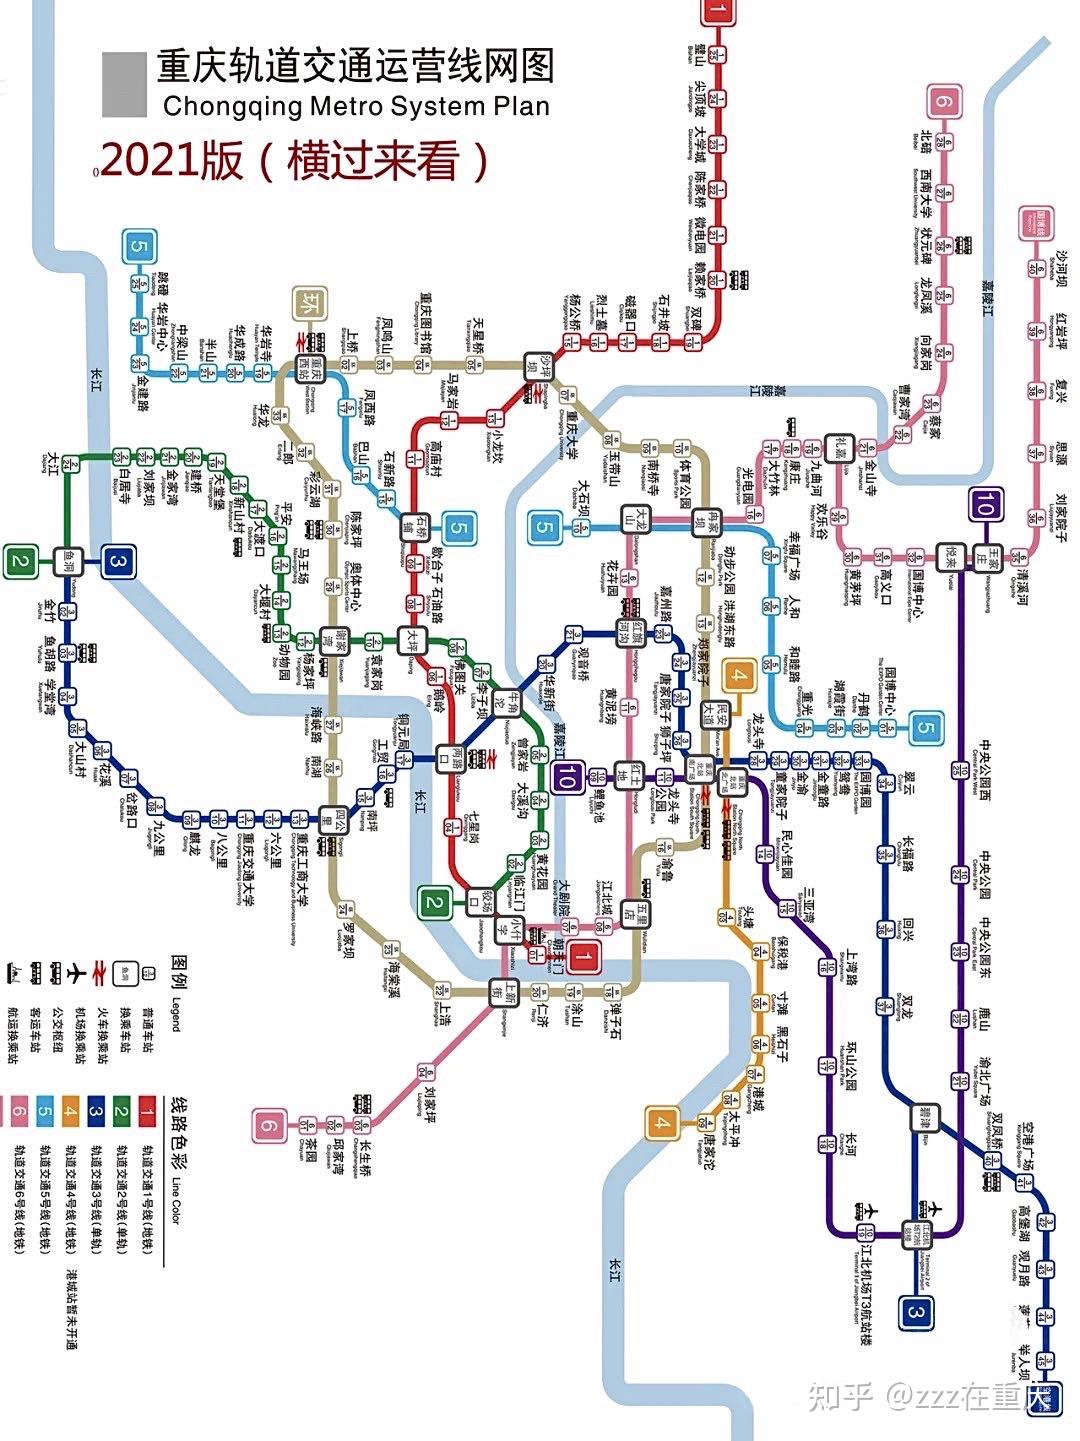 重庆旅游92史上最全轻轨线路图75良心总结